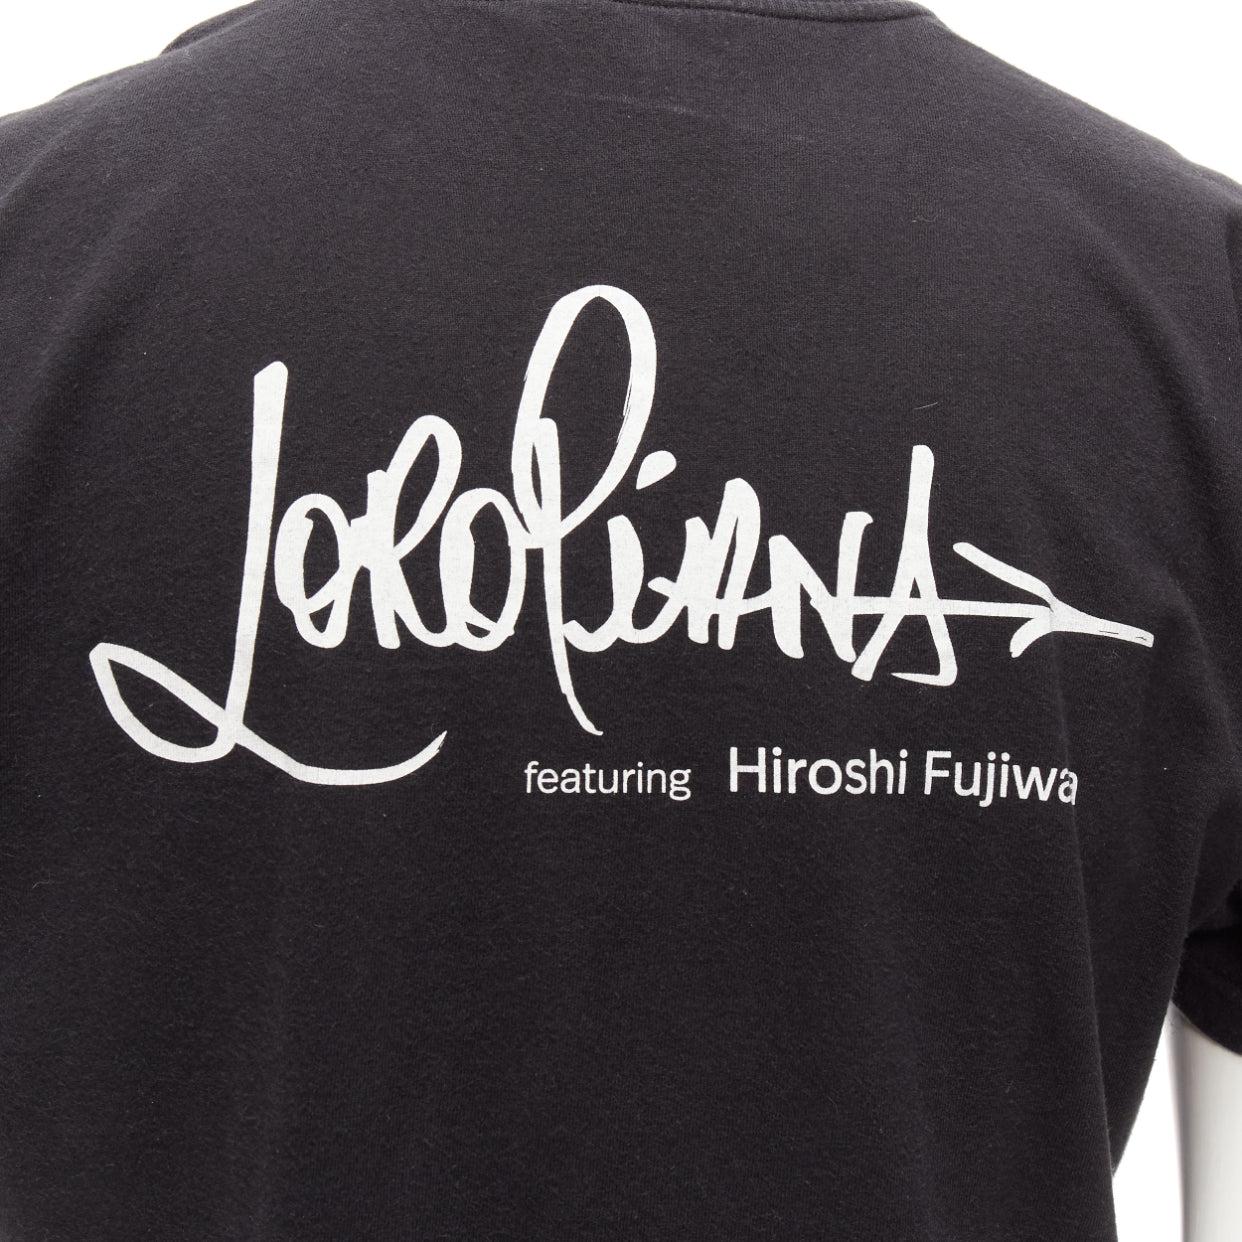 LORO PIANA Hiroshi Fujiwara black cotton white logo tshirt S For Sale 3